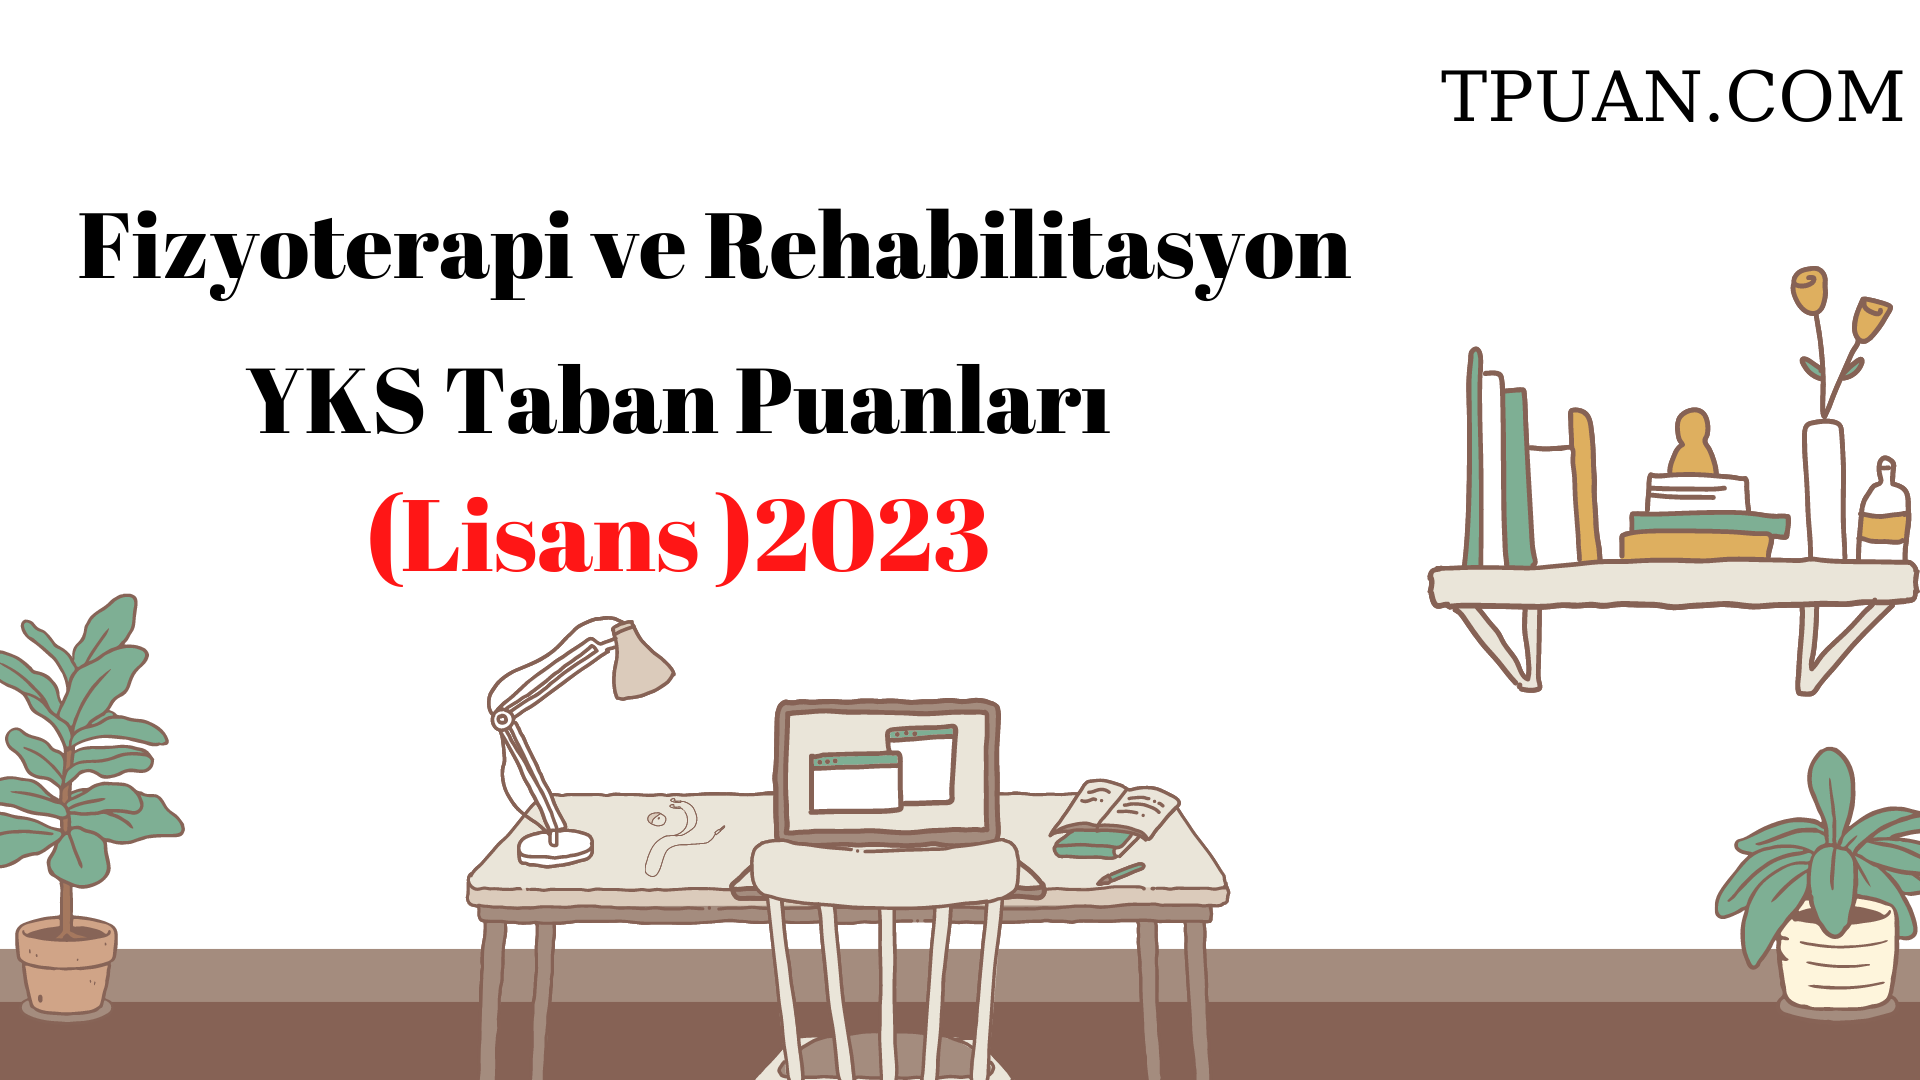  Fizyoterapi ve Rehabilitasyon Bölümü YKS Taban Puanları (4 Yıllık) 2023